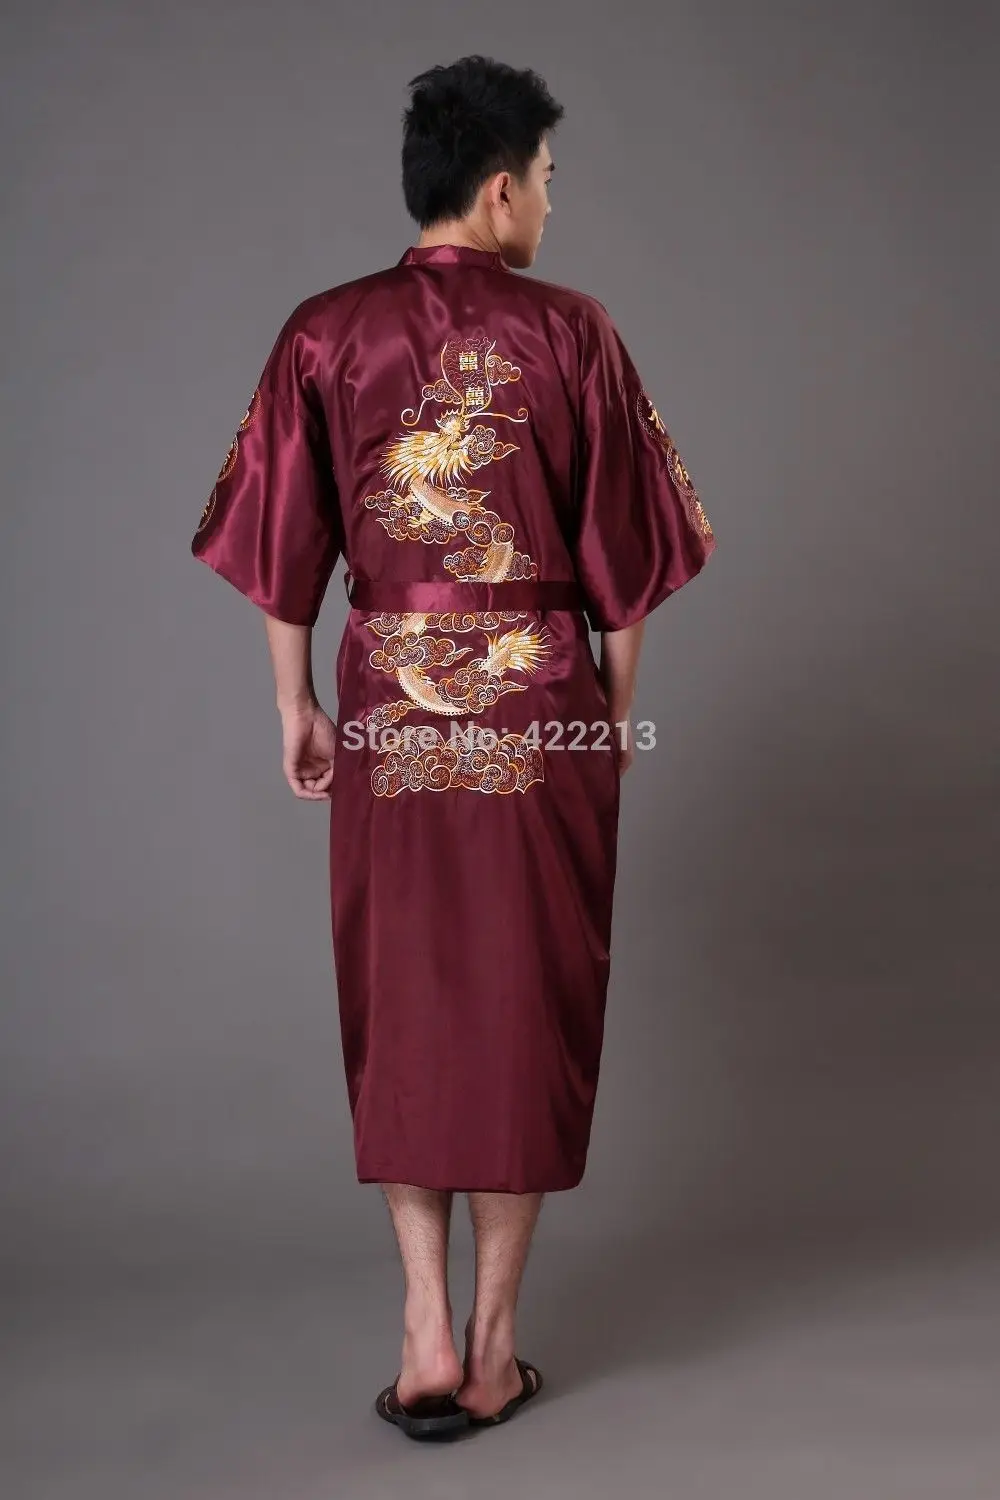 Китайская мужская шелковая атласная Вышивка в виде дракона юката кафтан халат платье с поясом M L XL XXL XXXL MR0016